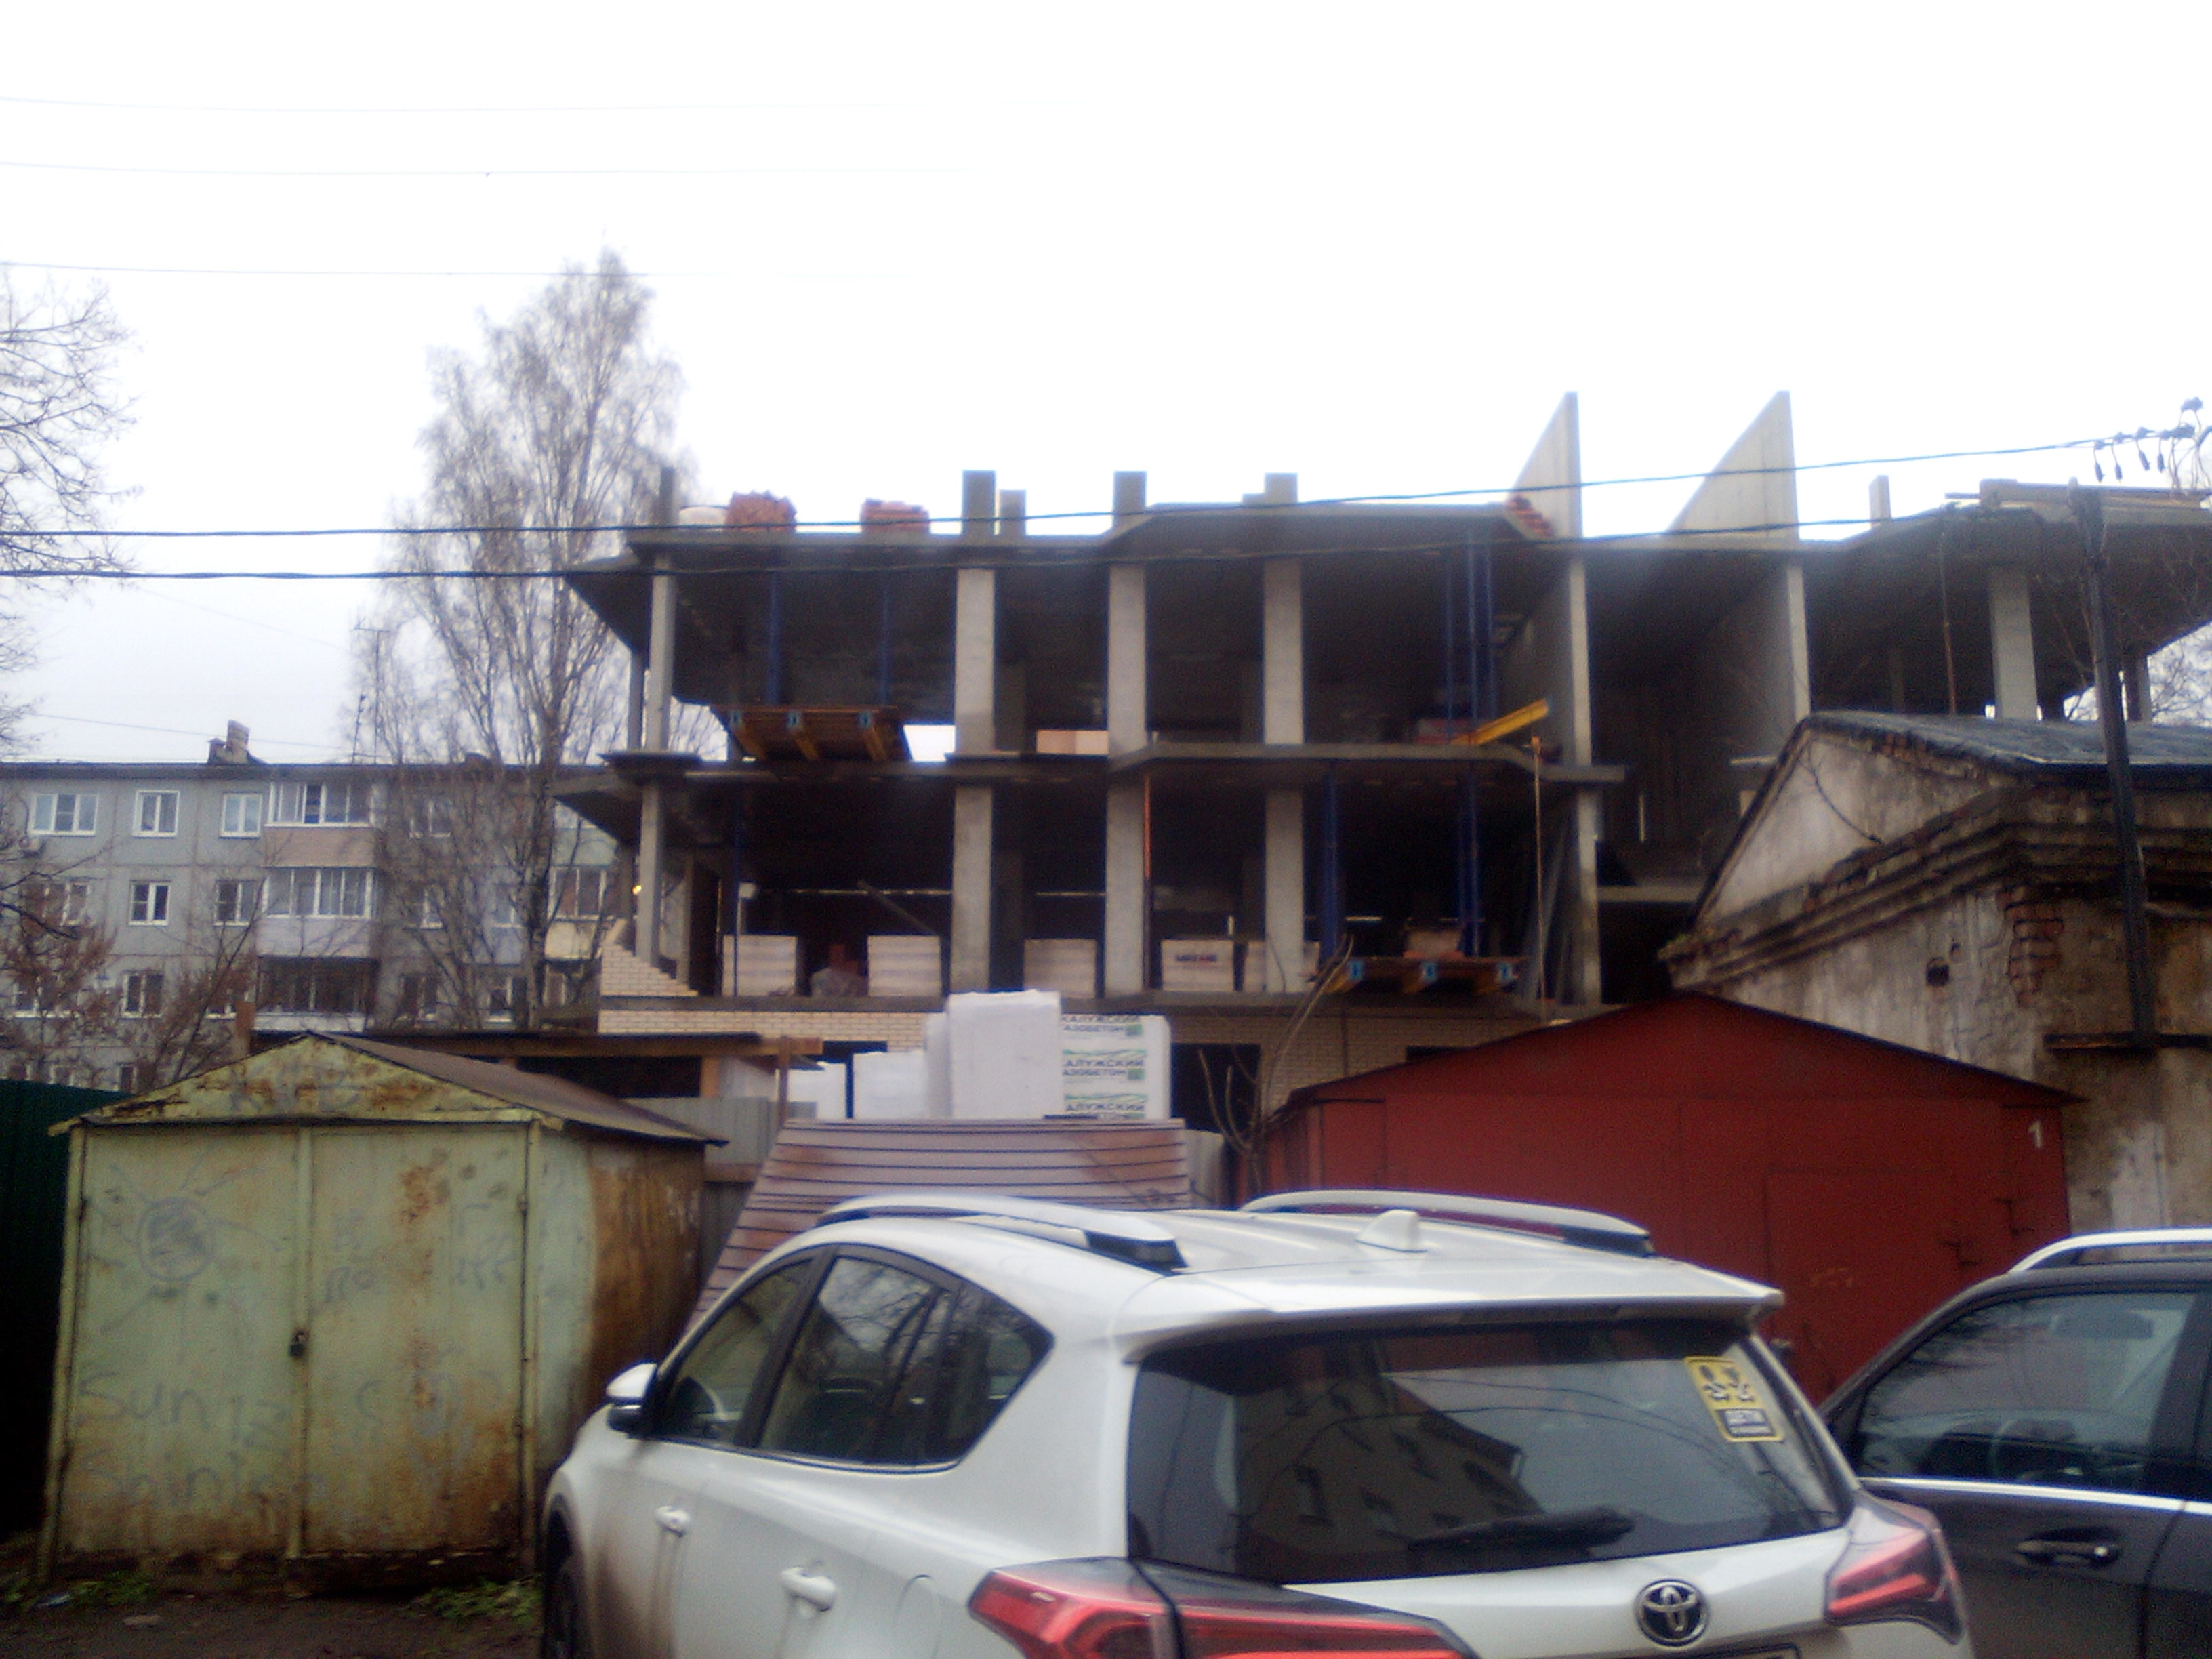 Фотографии жилого дома по улице Вересаева 26 г. Тулы Чипак А.Г.